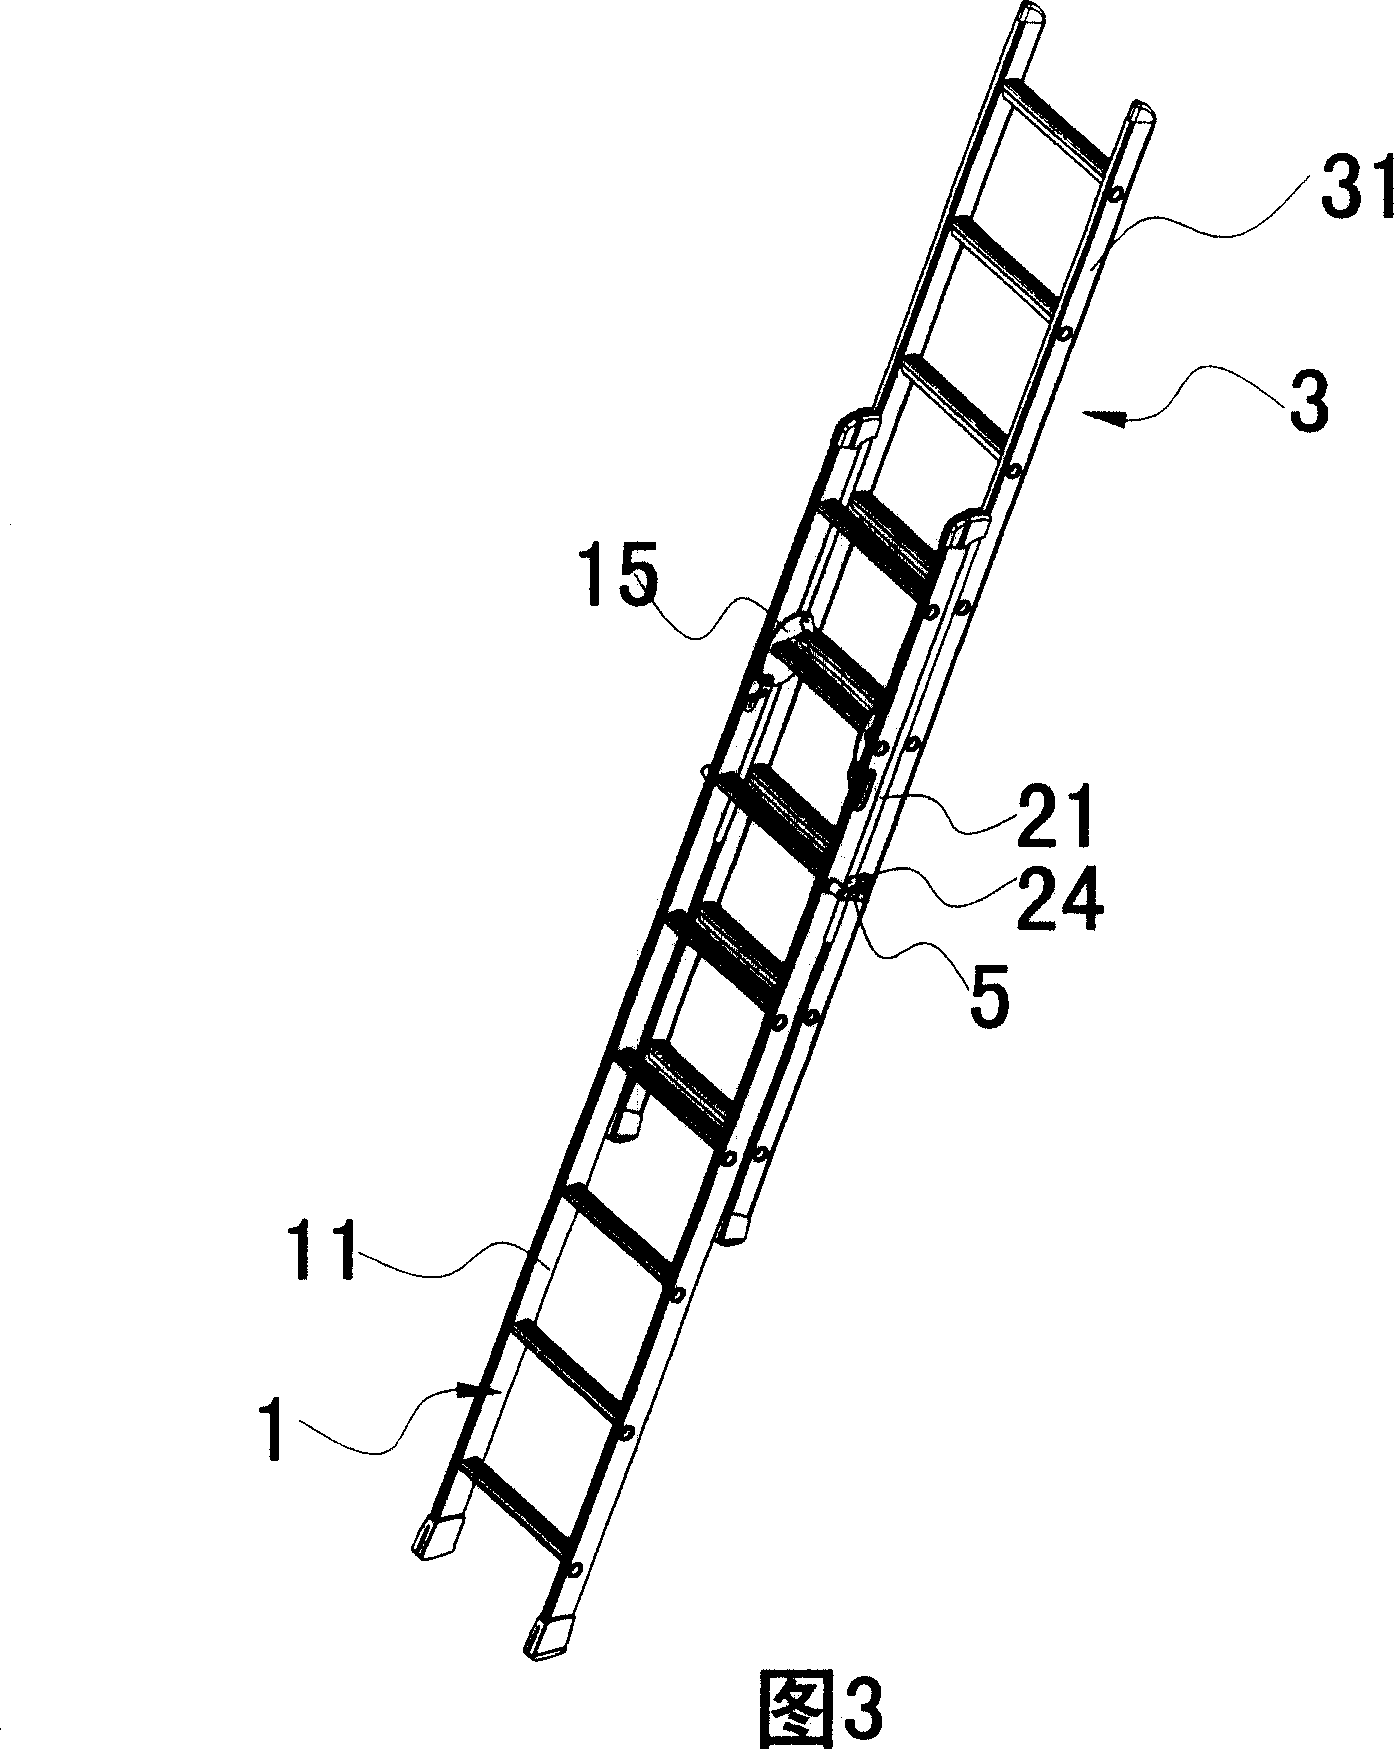 Liftable v-ladder